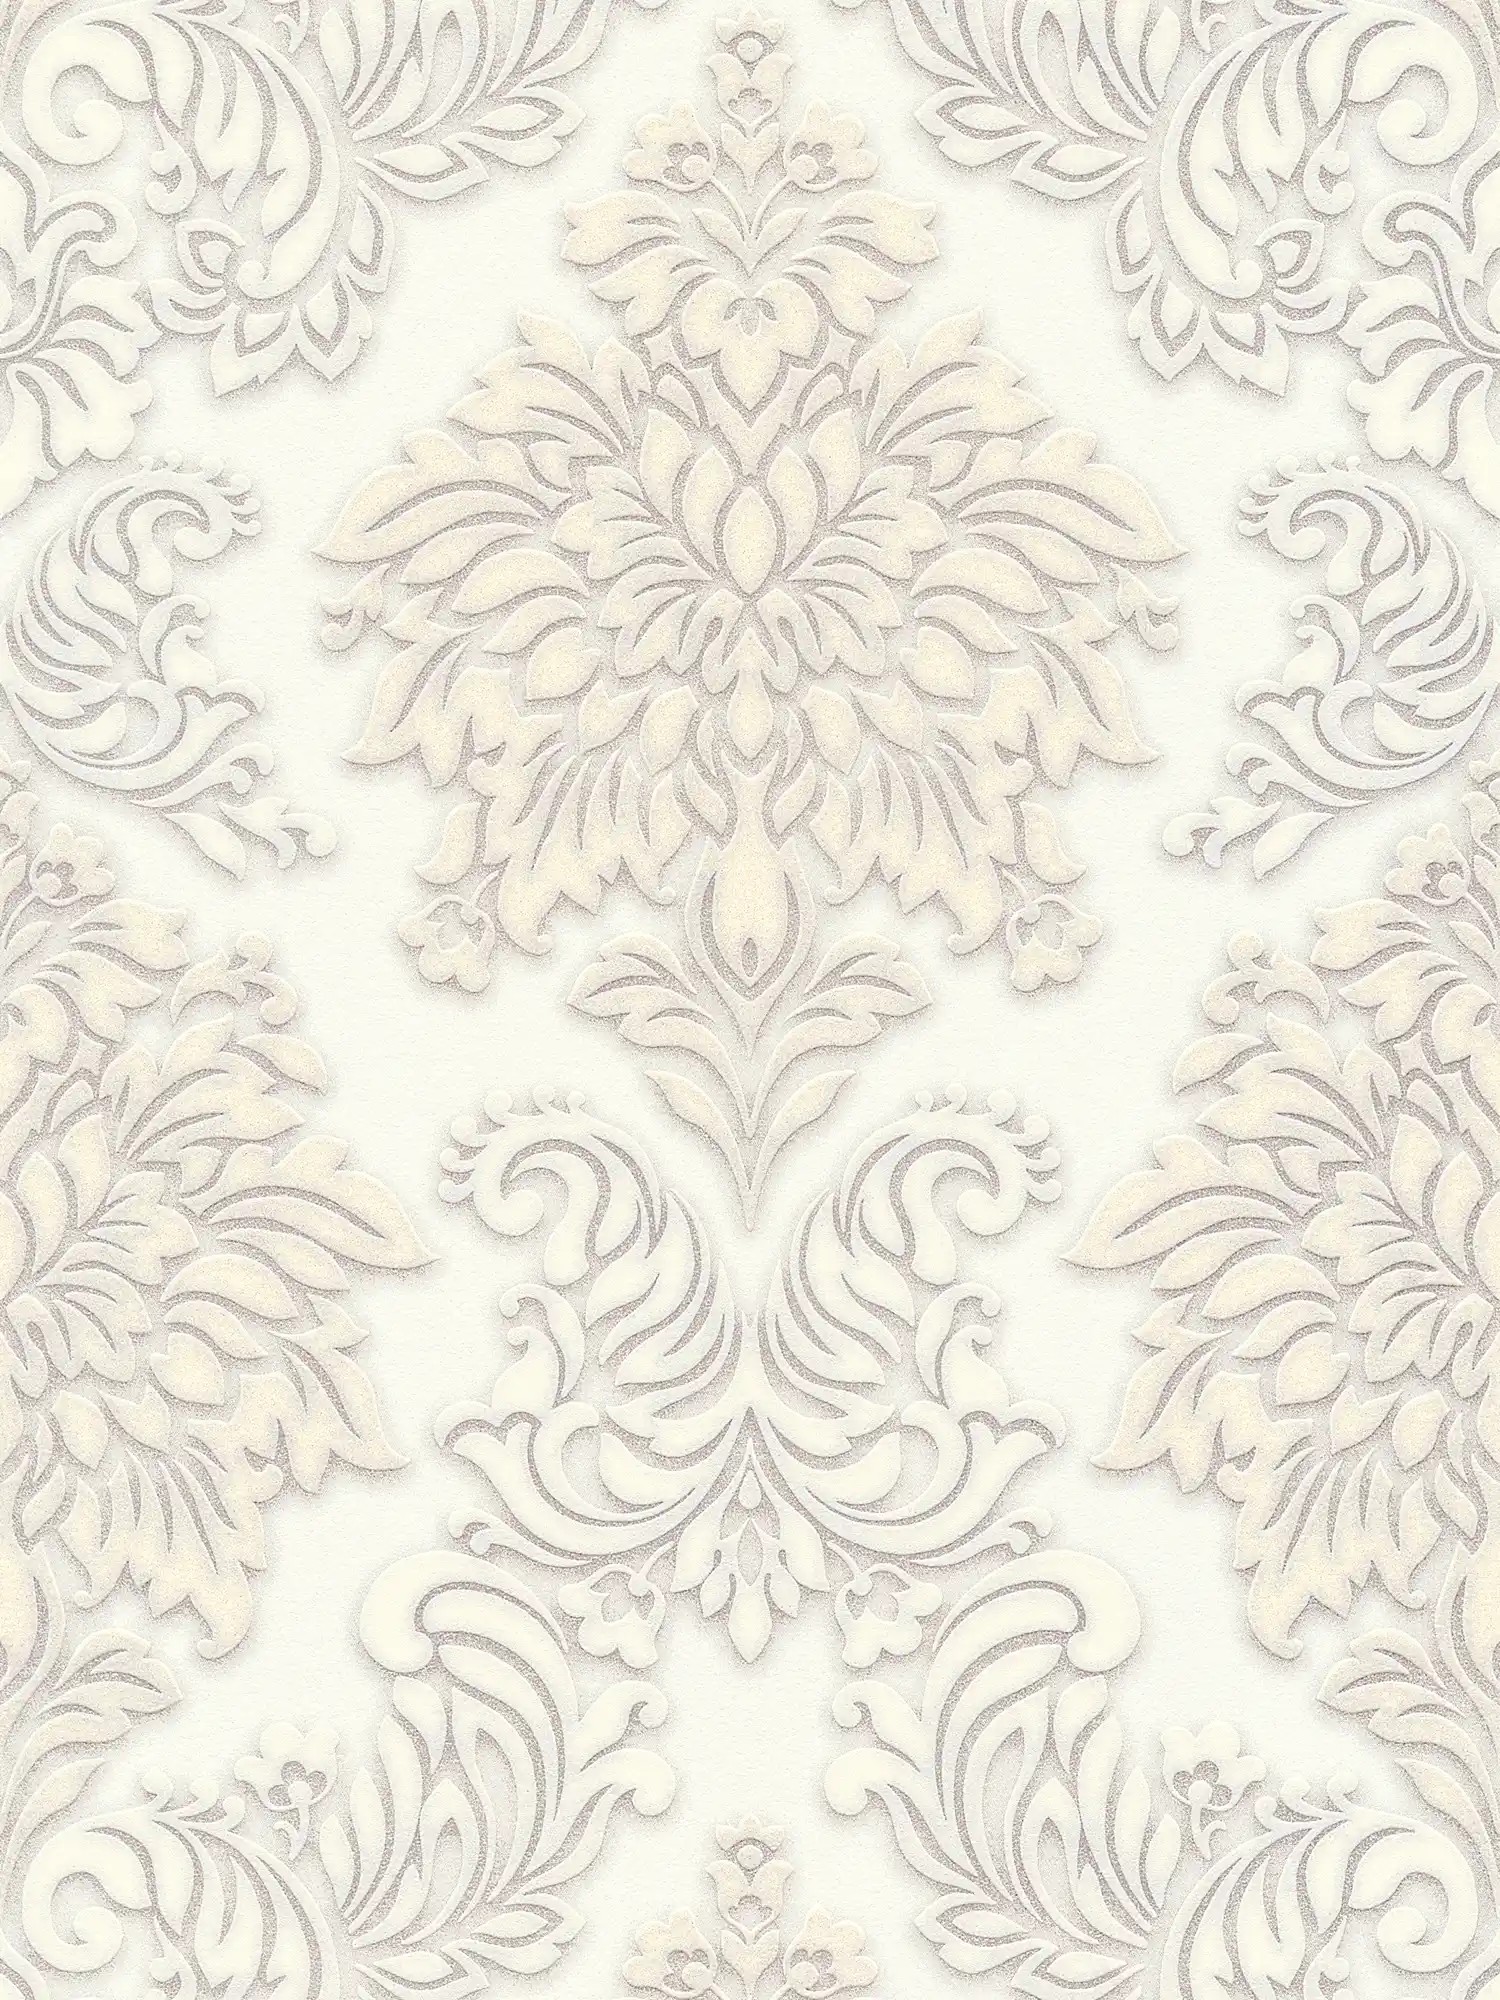 Adornos de papel pintado barroco con efecto de brillo - blanco, plata, beige
